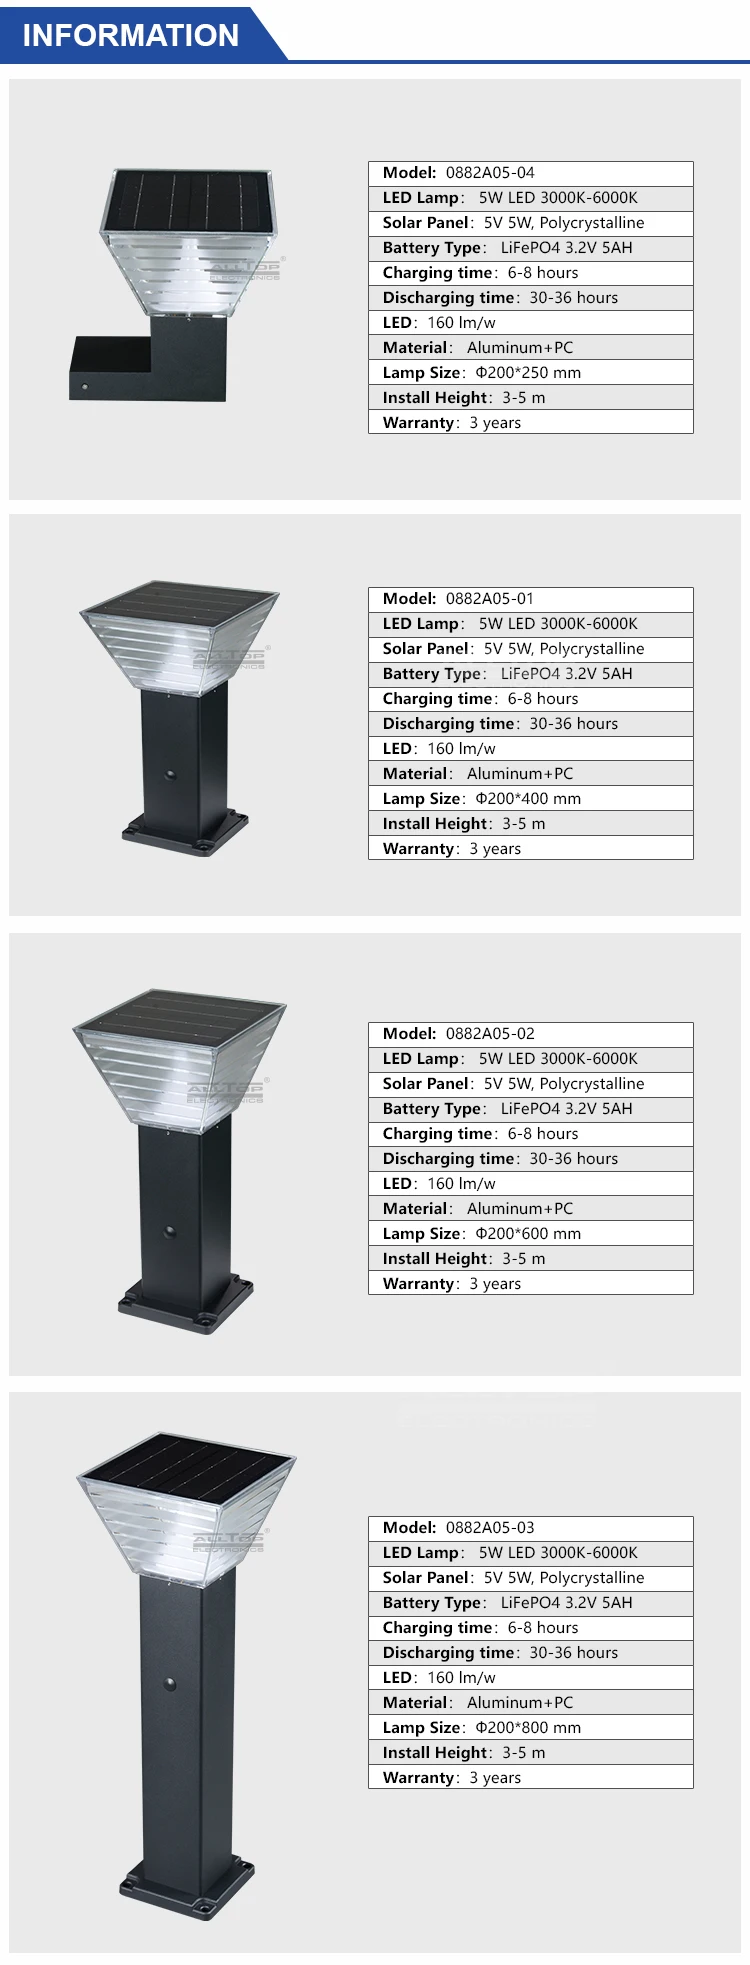 ALLTOP Hot sale 5w IP67 outdoor lighting waterproof mounted solar led garden light price